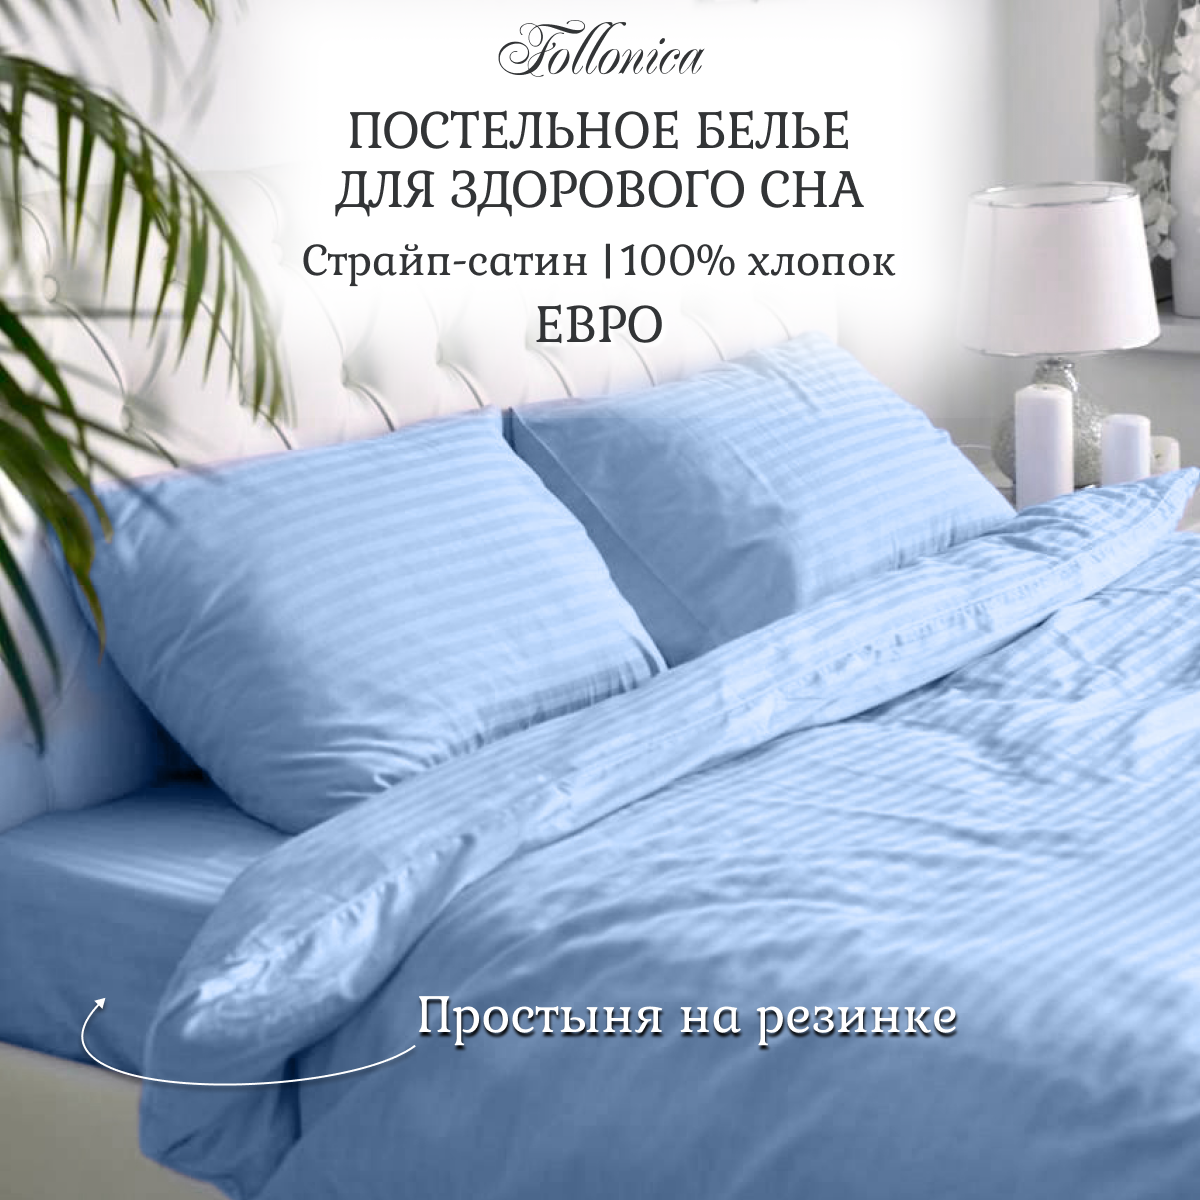 Постельное белье Follonica Stripe, размер евро, цвет голубой